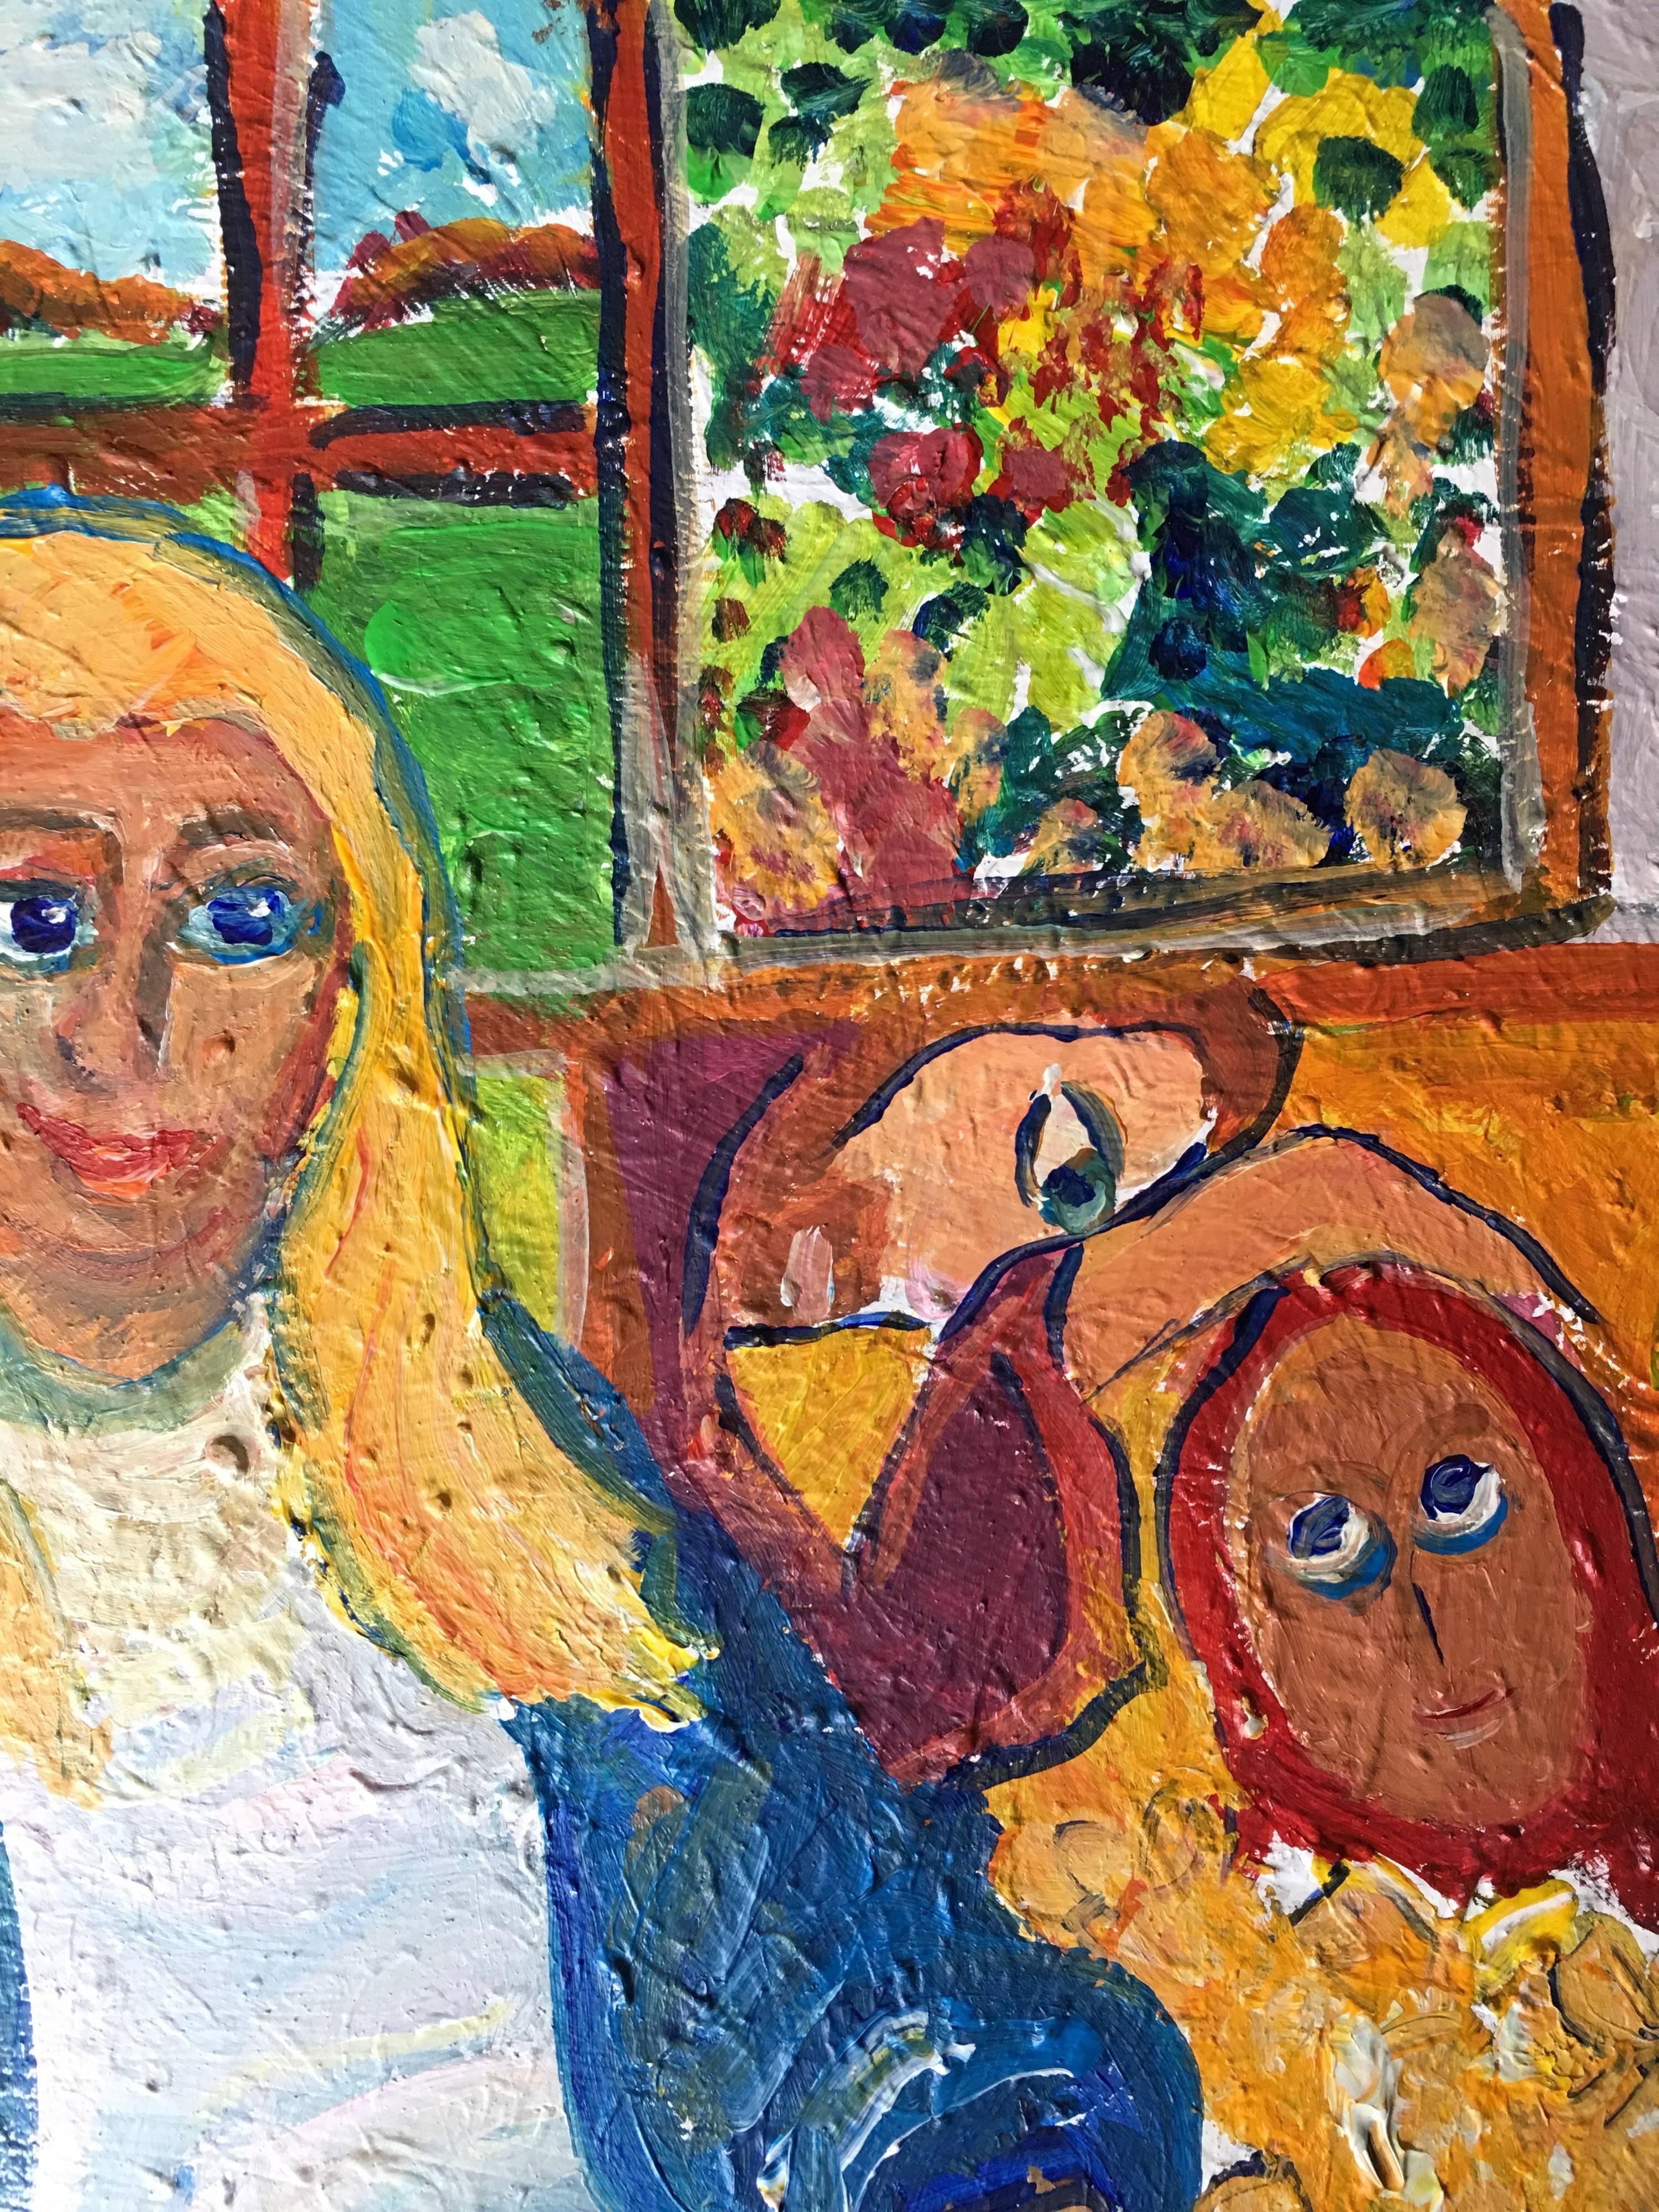 Impressionistische Figuren, leuchtende Farben, Ölgemälde
von Pamela Cawley, Britin, 20. Jahrhundert
ölgemälde auf Karton, ungerahmt
brett: 20 x 16 Zoll 

Beeindruckendes originales impressionistisches Ölgemälde der britischen Künstlerin Pamela